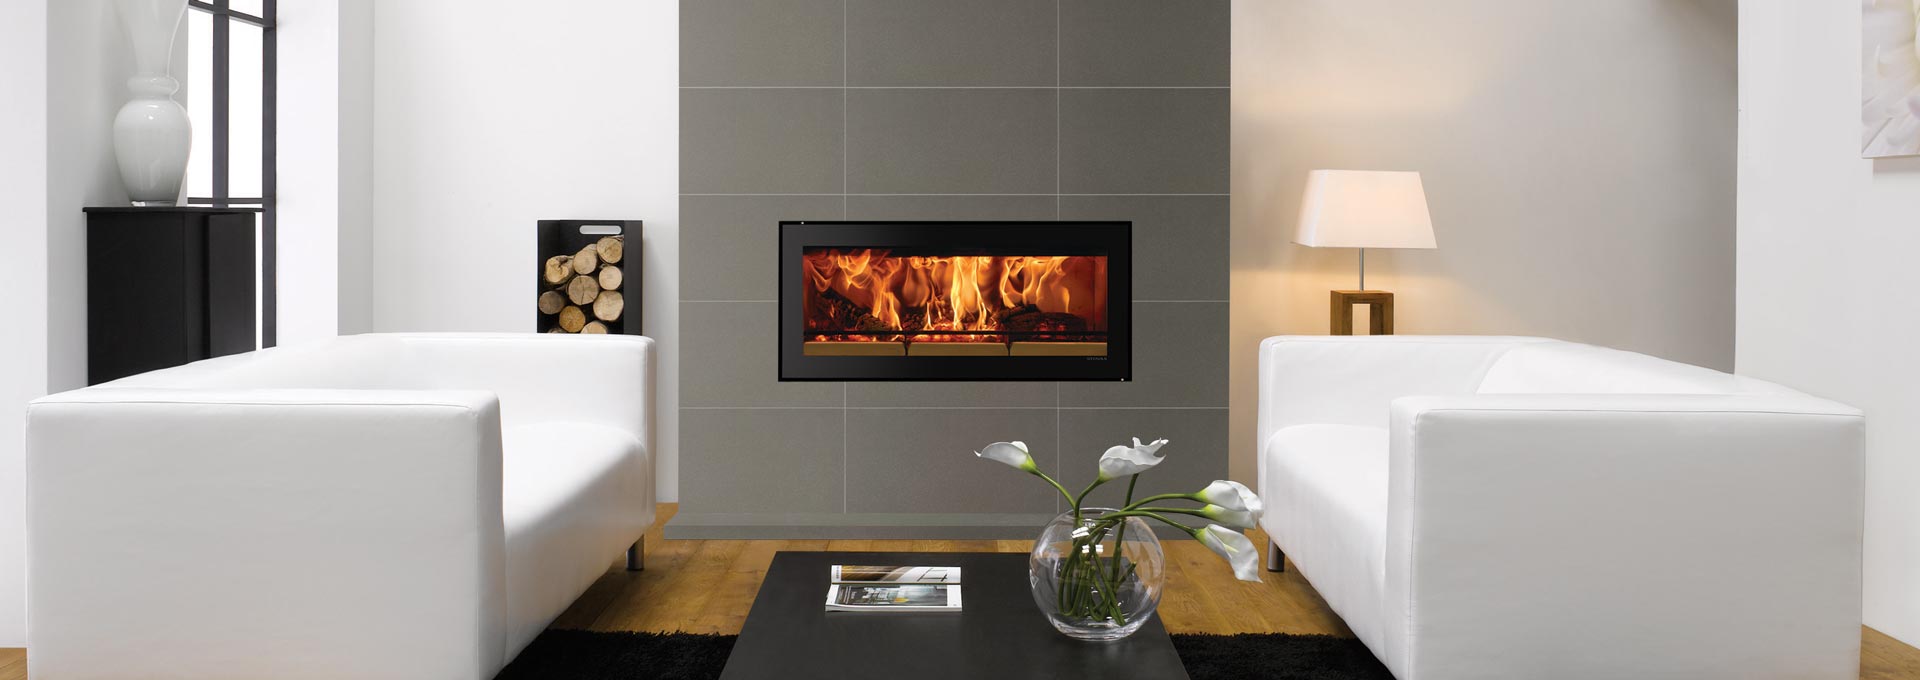 STV2C-fireplace-edge-1920x680